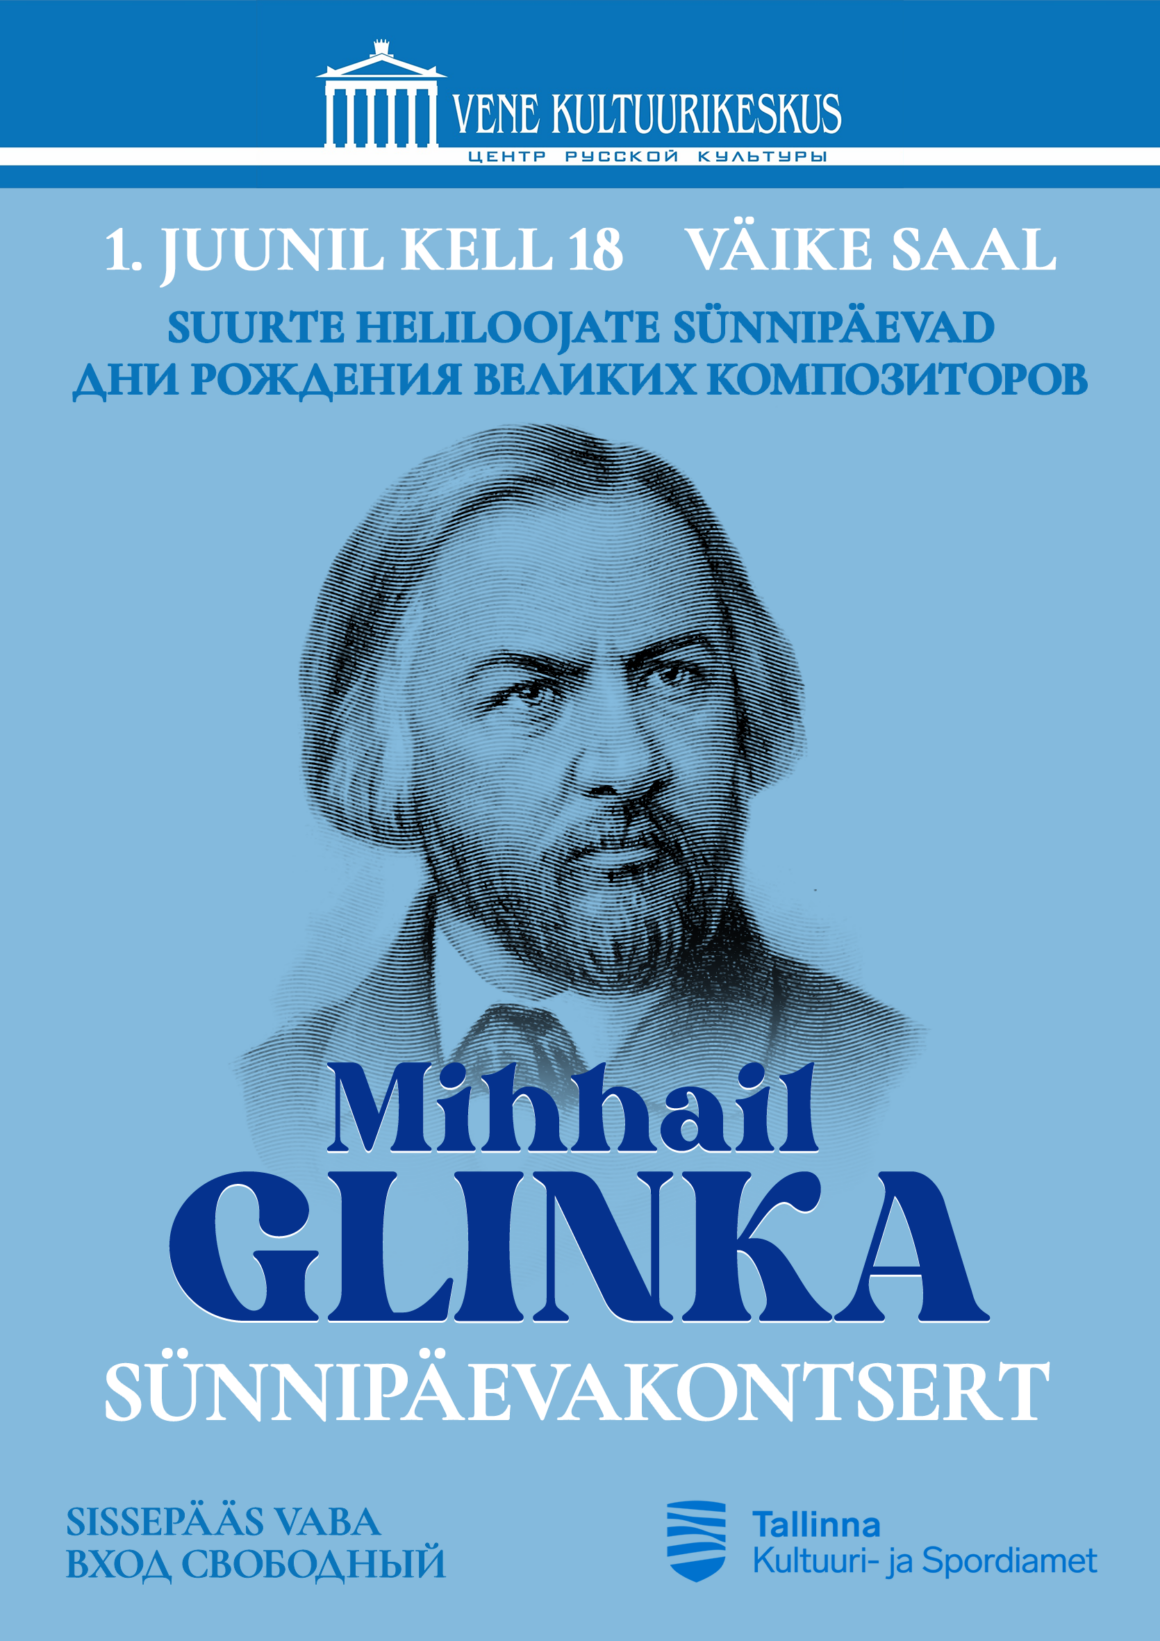 1.06 – “Suurte heliloojate sünnipäevad”: Mihhail Glinka sünnipäevakontsert